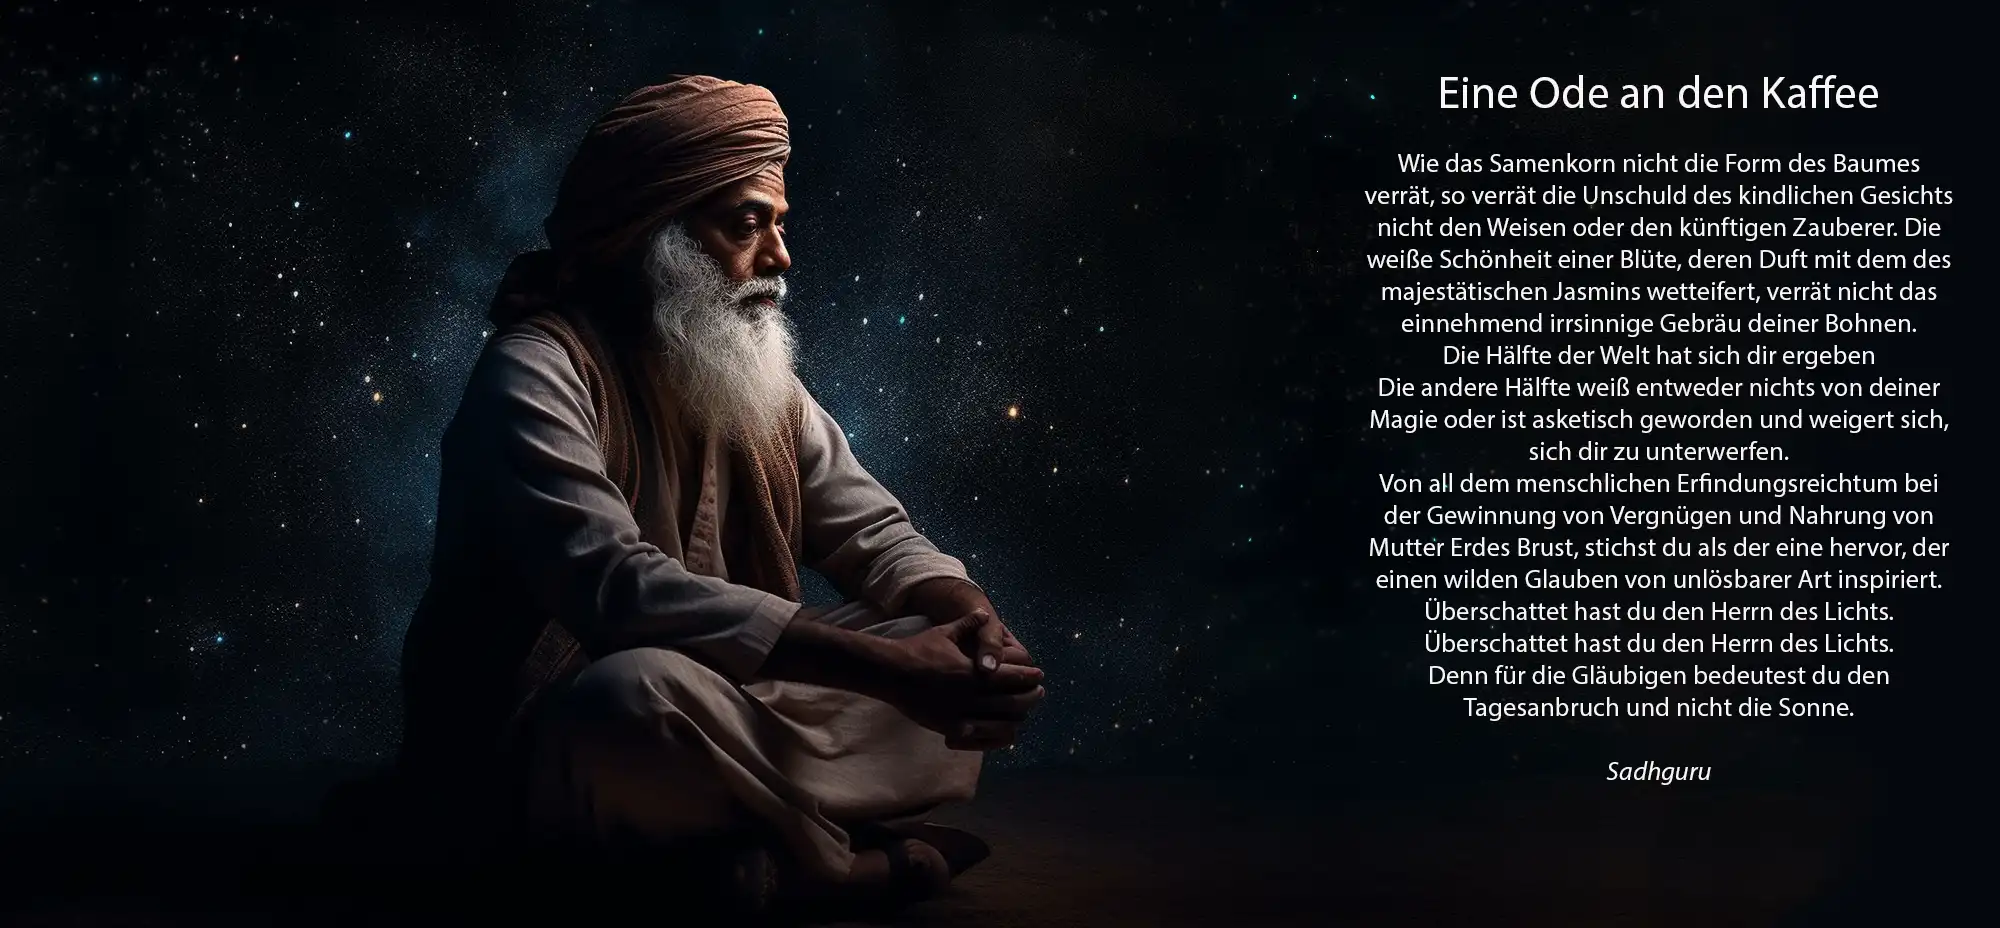 Indischer Guru sitzt im Schneidersitz vor Sternenhimmel, er wirkt nachdenklich, rechts ist ein Gedicht abgebildet, also als Fließtext